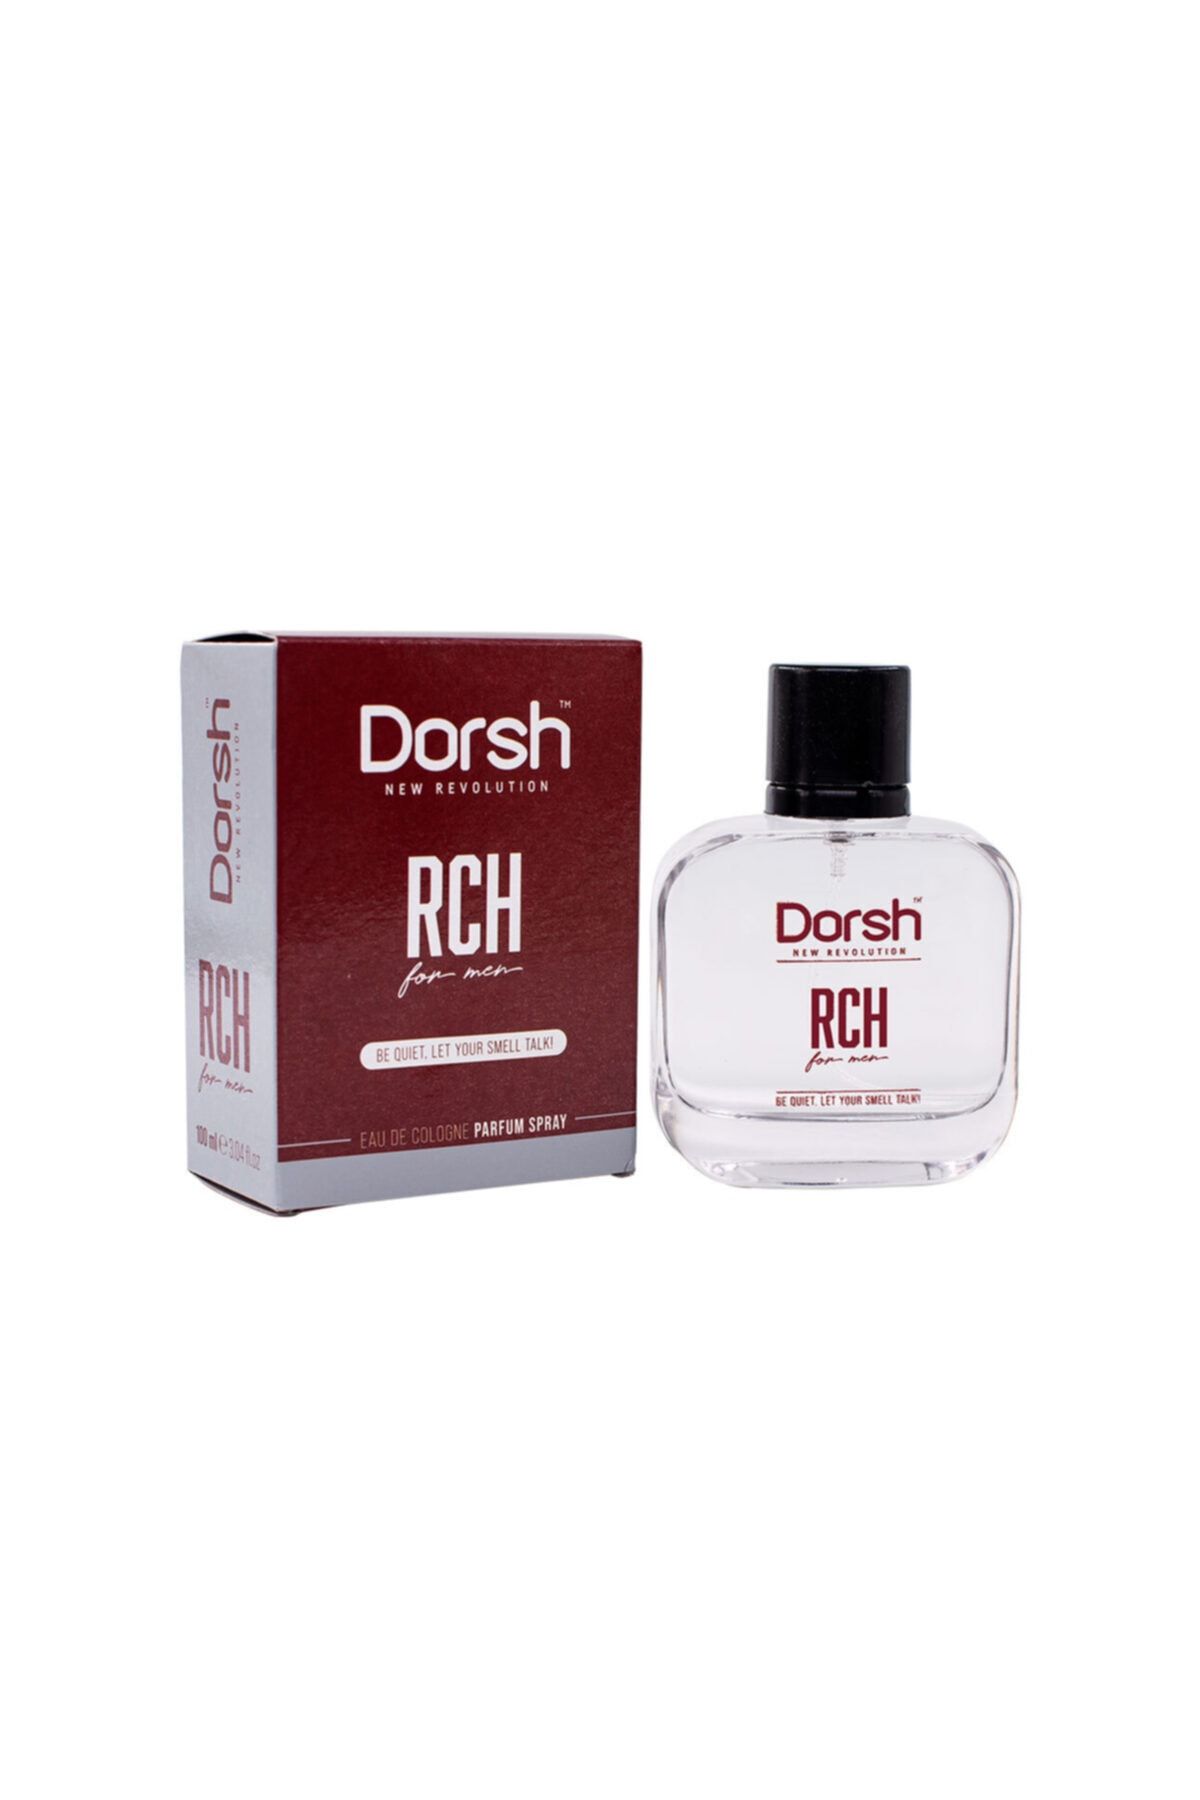 Dorsh Rch For Men Erkek Parfüm 100 Ml